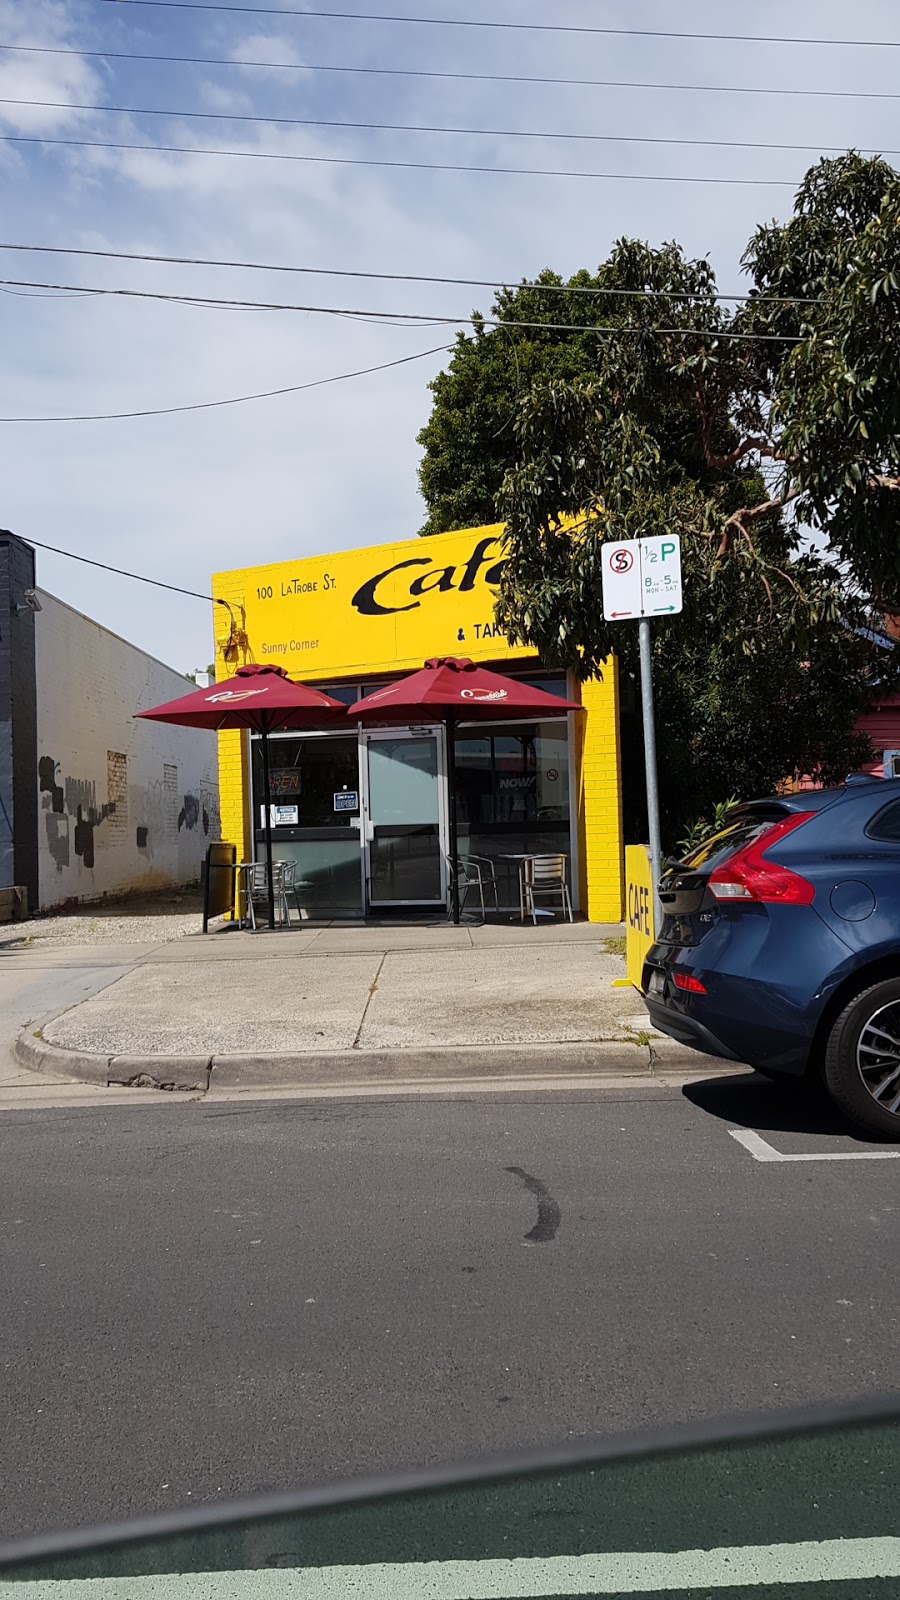 Sunny Corner Cafe & Takeaway | cafe | 100 Latrobe St, Mentone VIC 3194, Australia